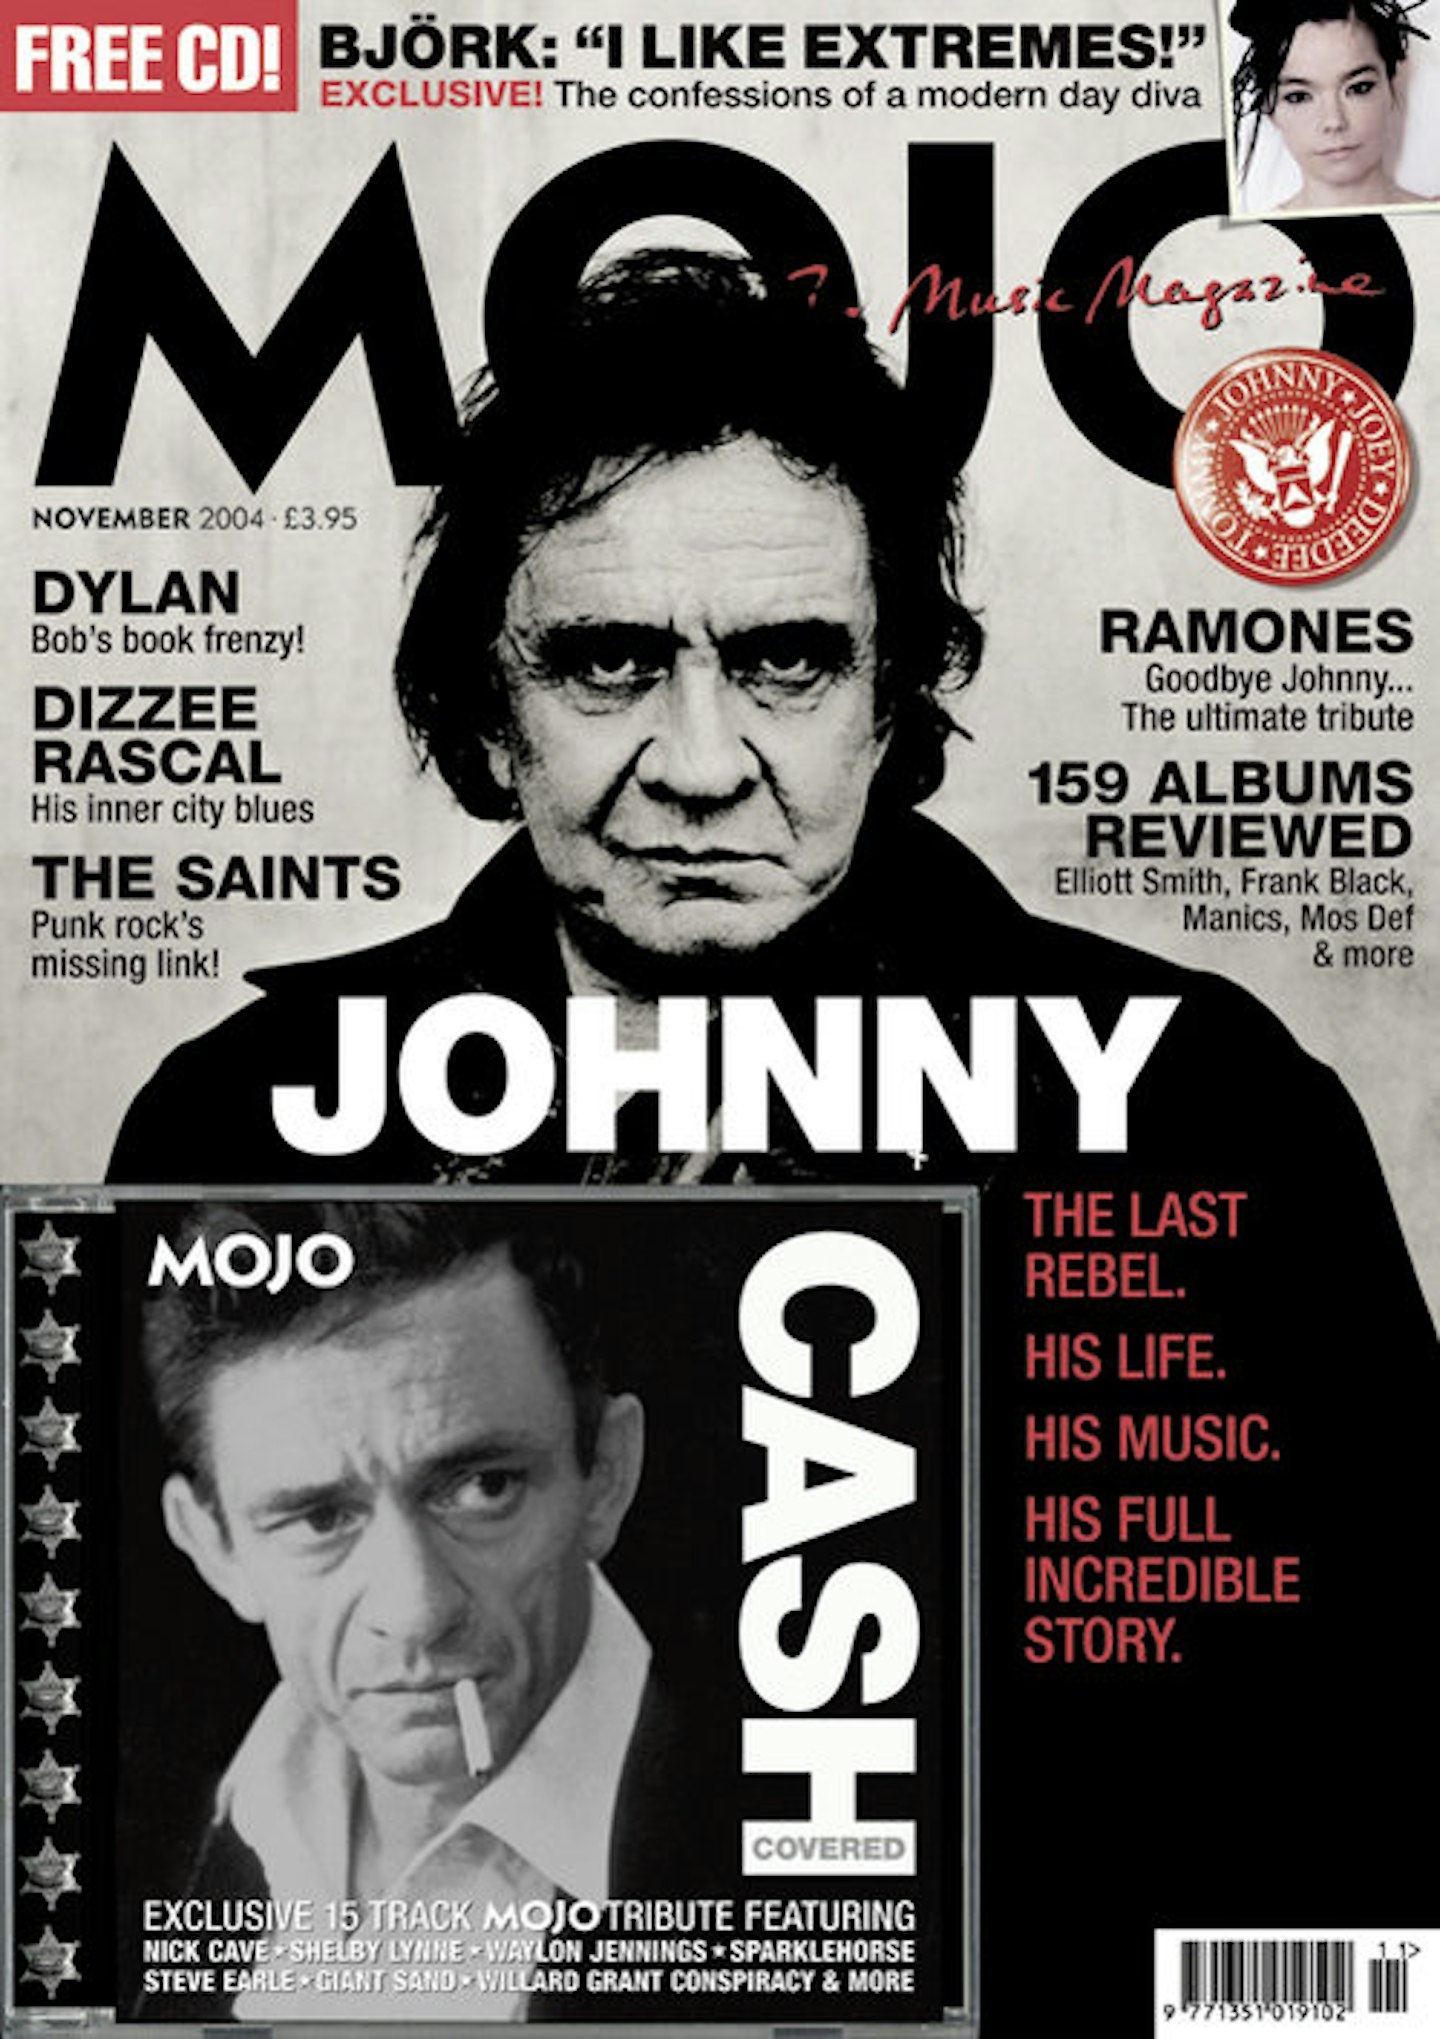 MOJO Issue 133 / December 2004